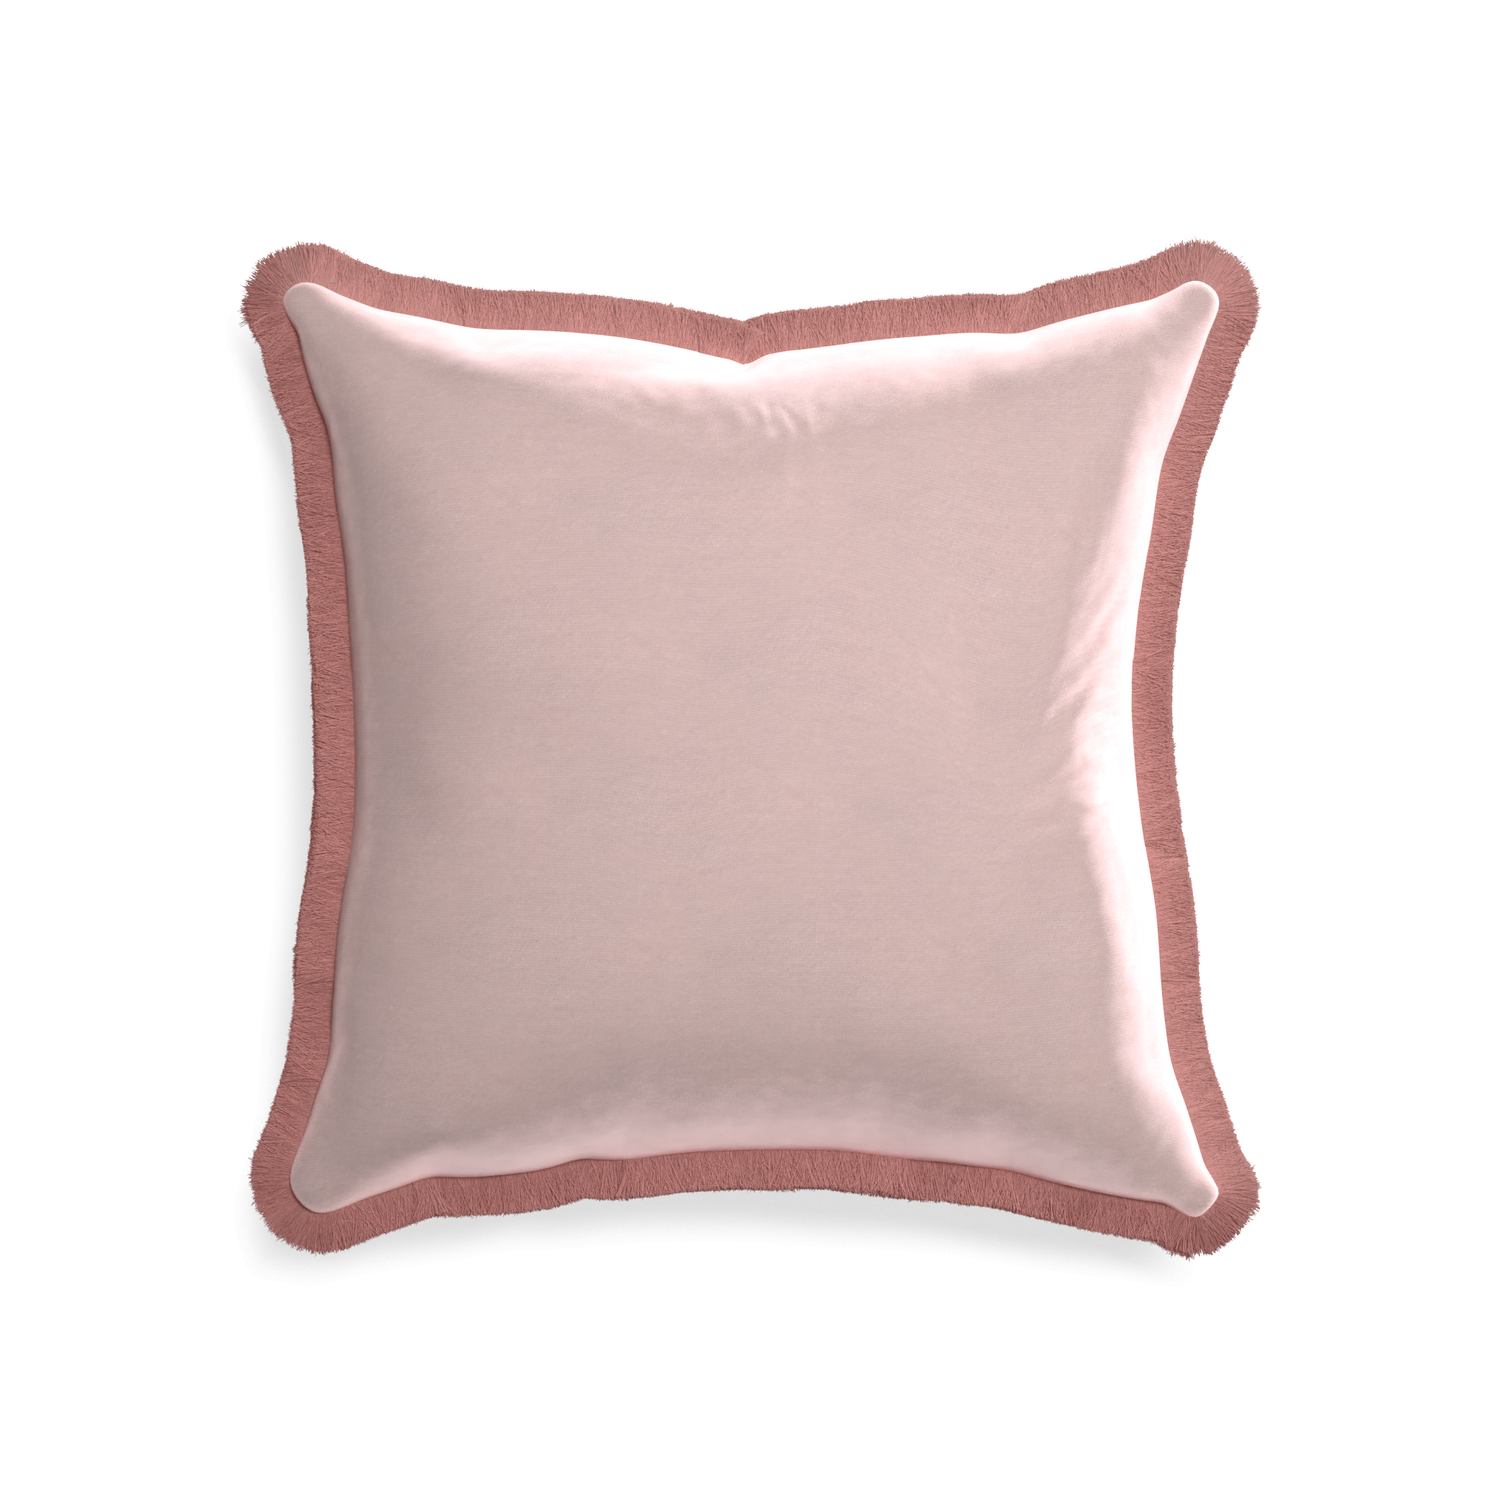 square light pink velvet pillow with dusty rose fringe 